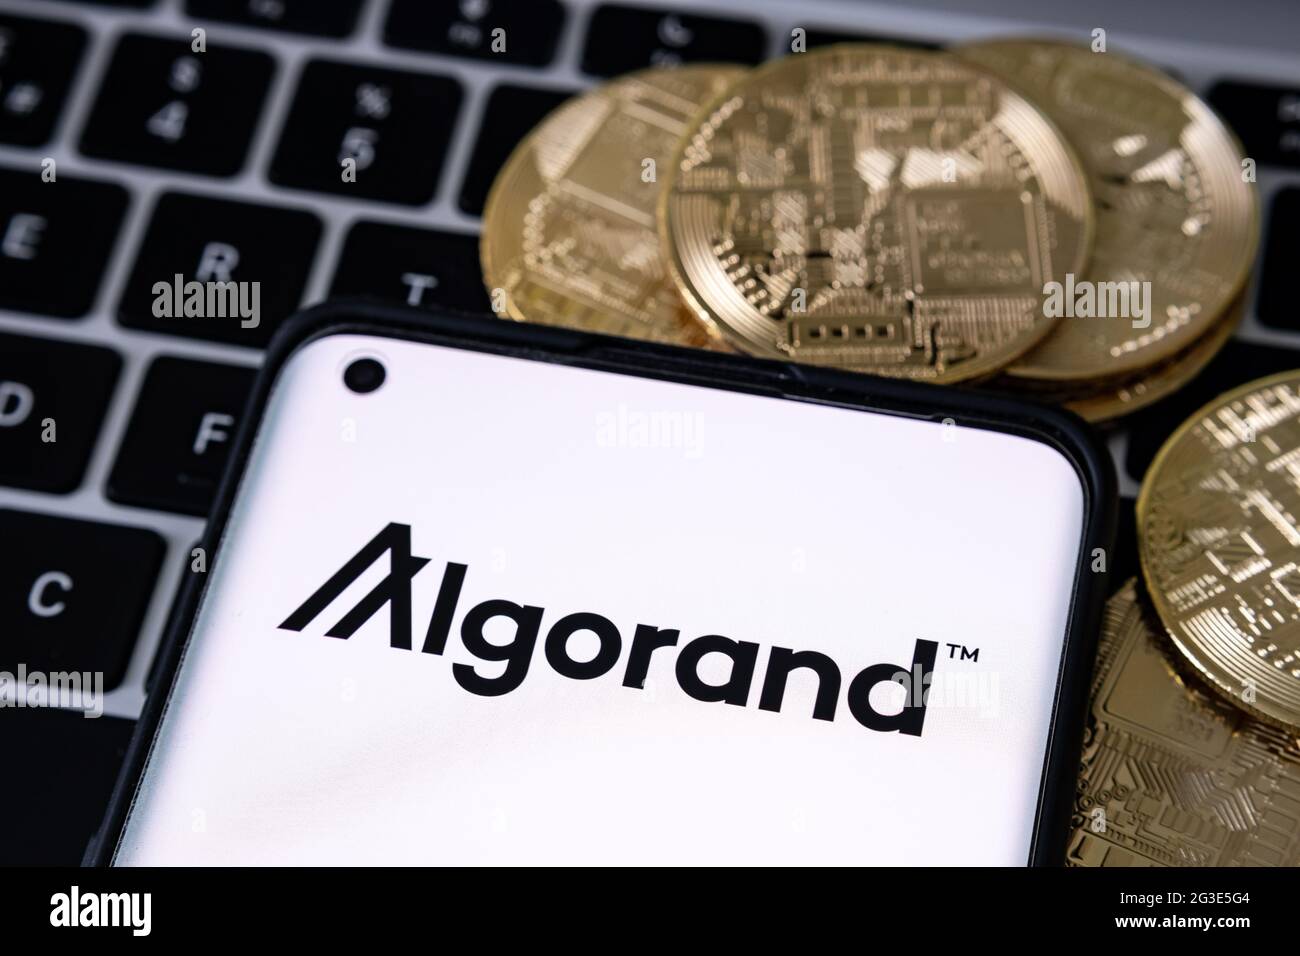 Logotipo de la plataforma de criptomoneda Algorand visto en el smartphone colocado en el teclado del portátil. Concepto. Stafford, Reino Unido, 16 de junio de 2021. Foto de stock